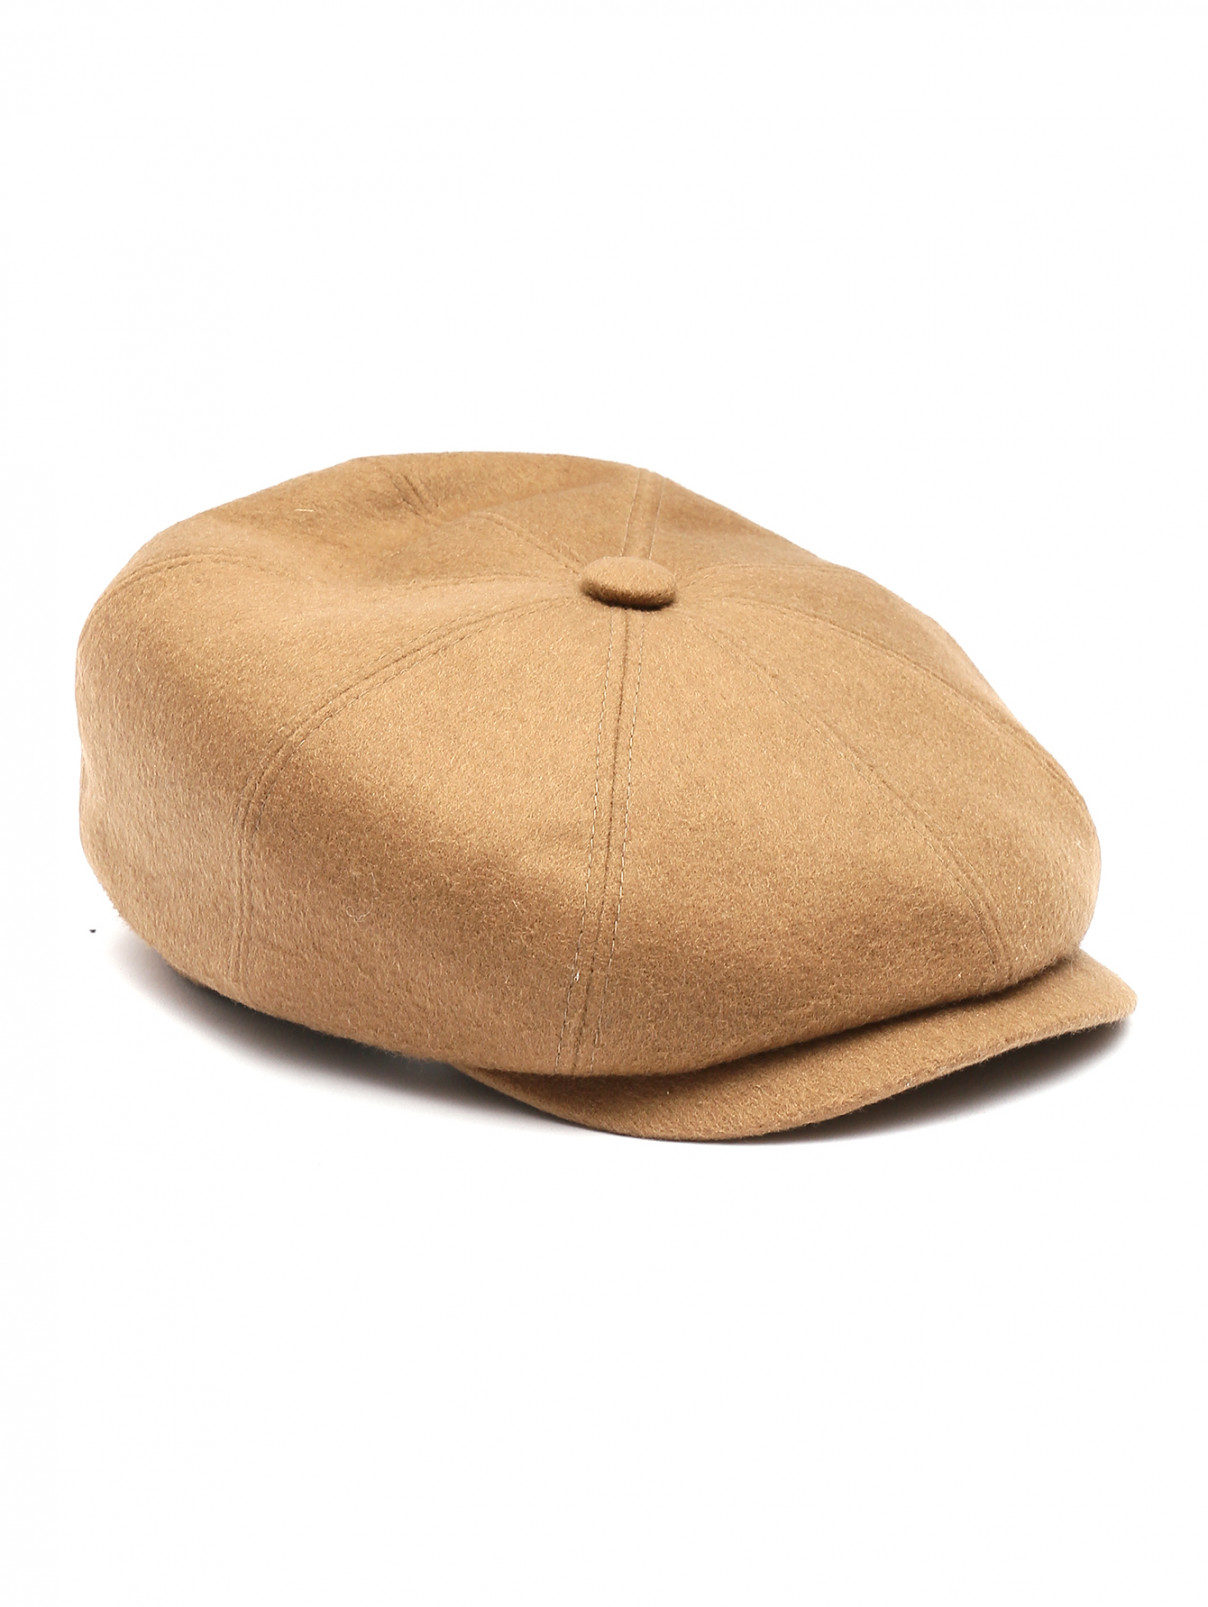 Однотонная кепка из шерсти Stetson  –  Общий вид  – Цвет:  Бежевый